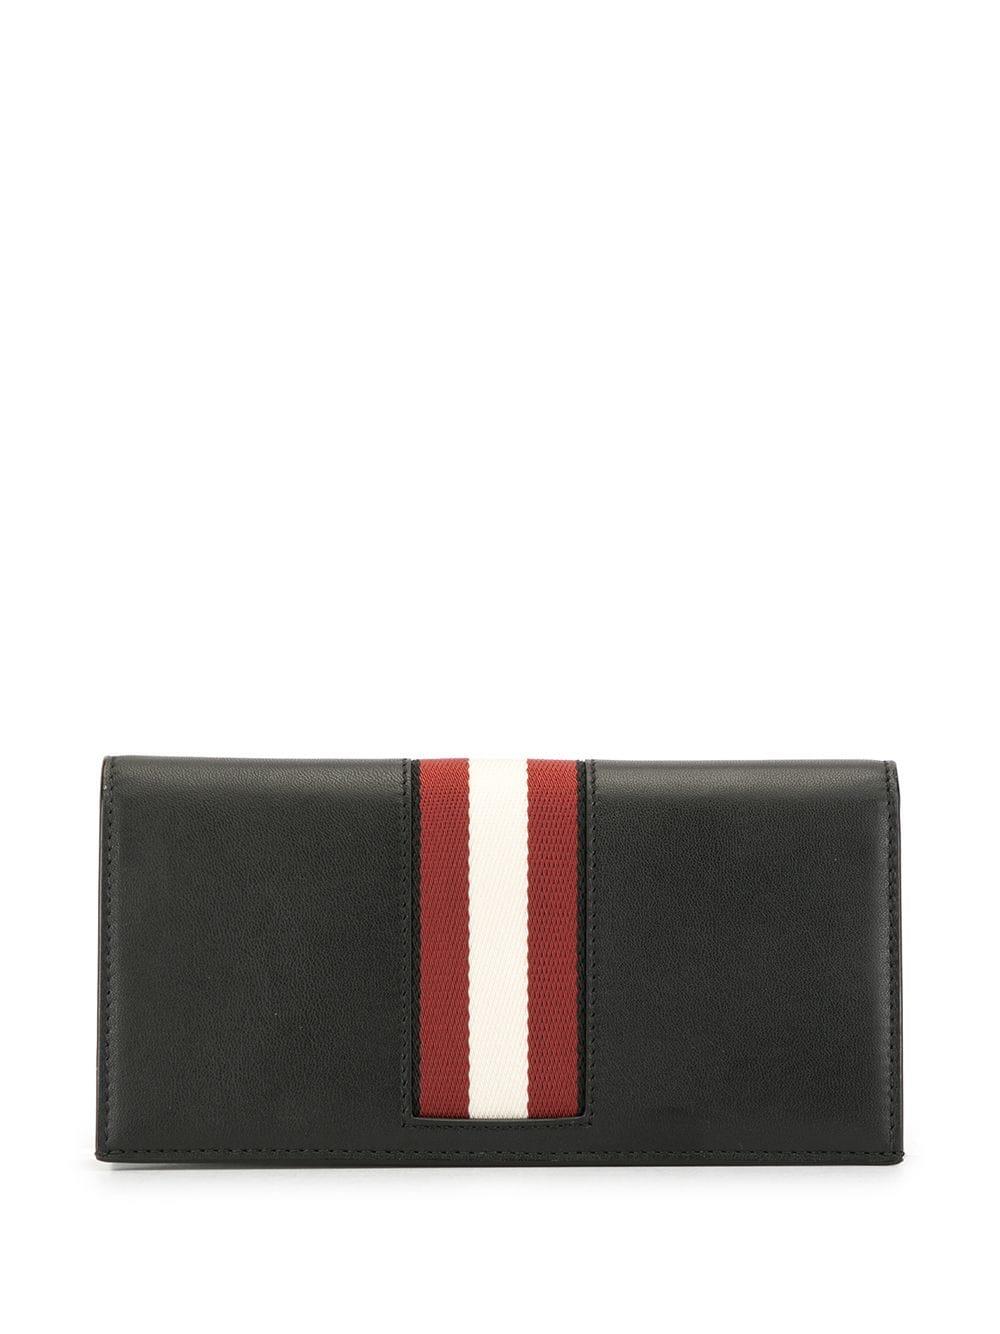 Bally embossed logo foldover wallet - Black